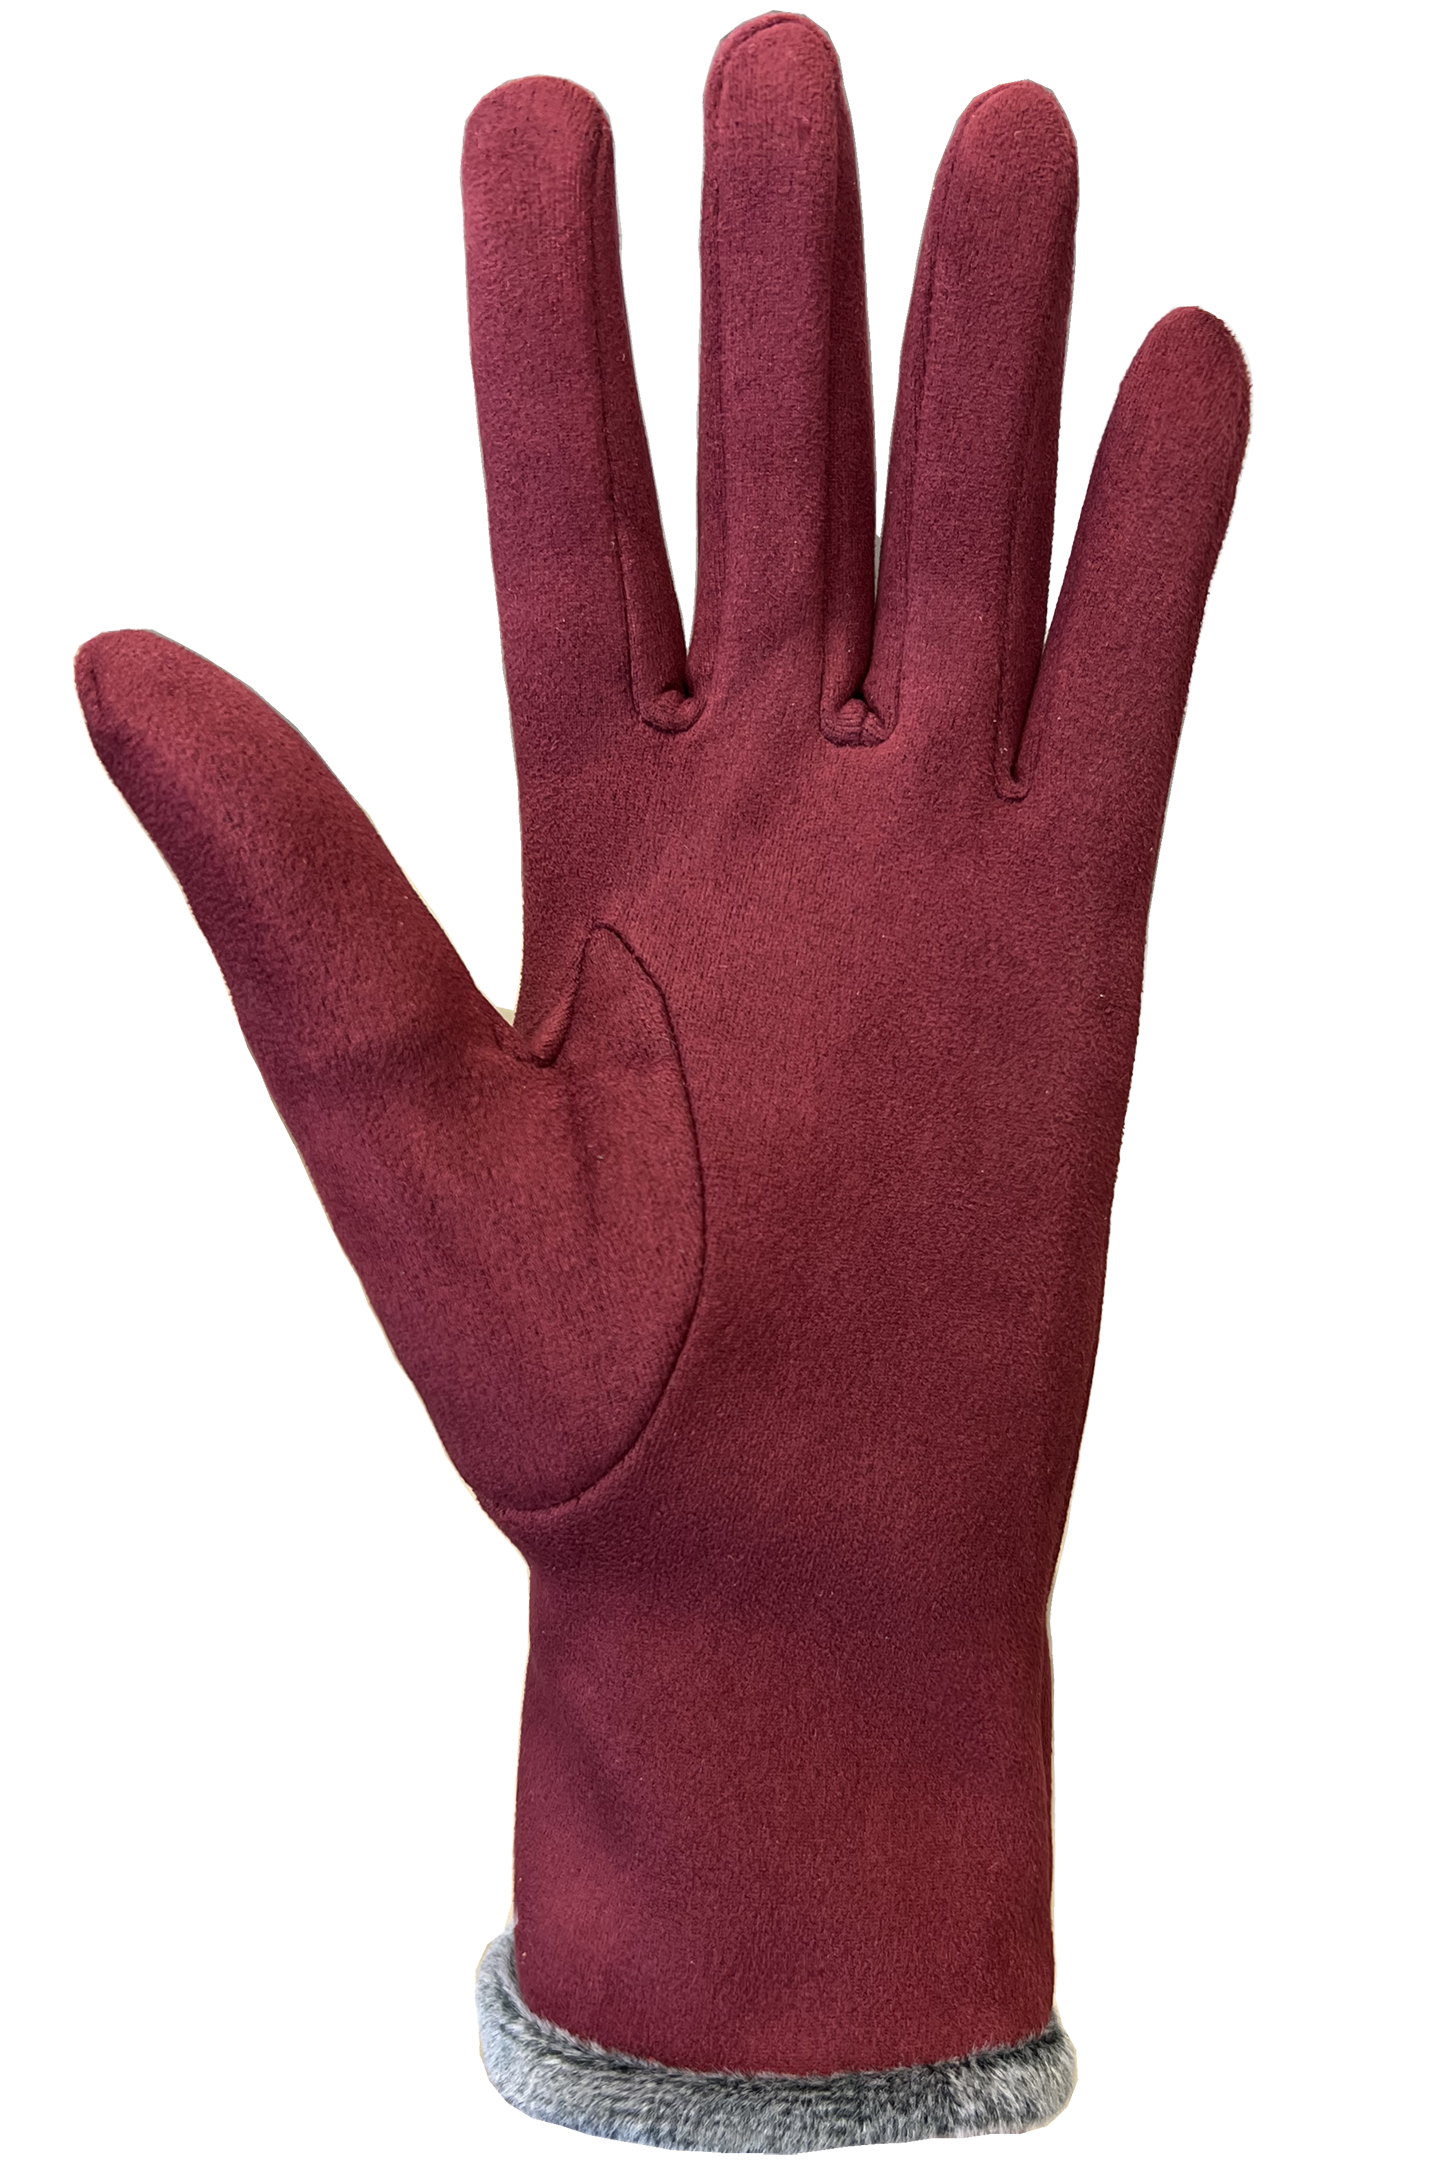 Aria Gloves - Women-Glove-Auclair-Auclair Sports